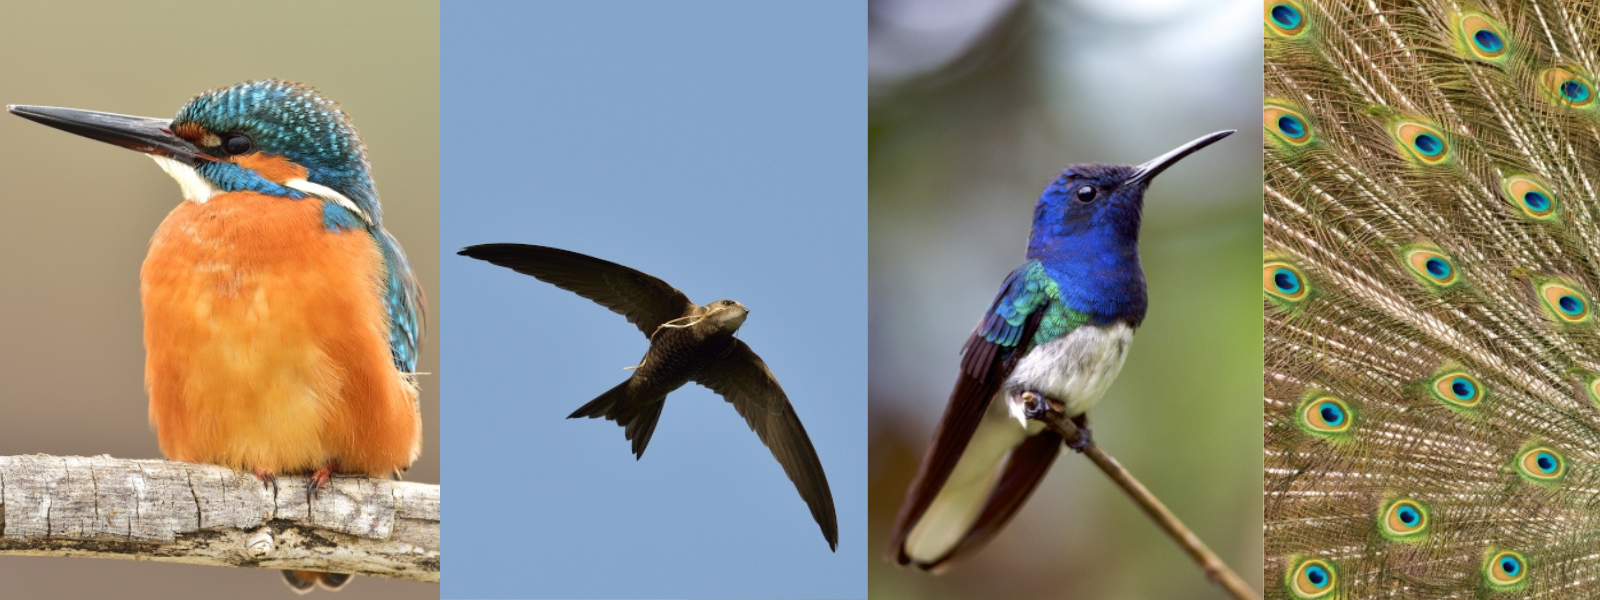 De gauche à droite : martin-pêcheur, martinet, colibri jacobin et plumes de paon